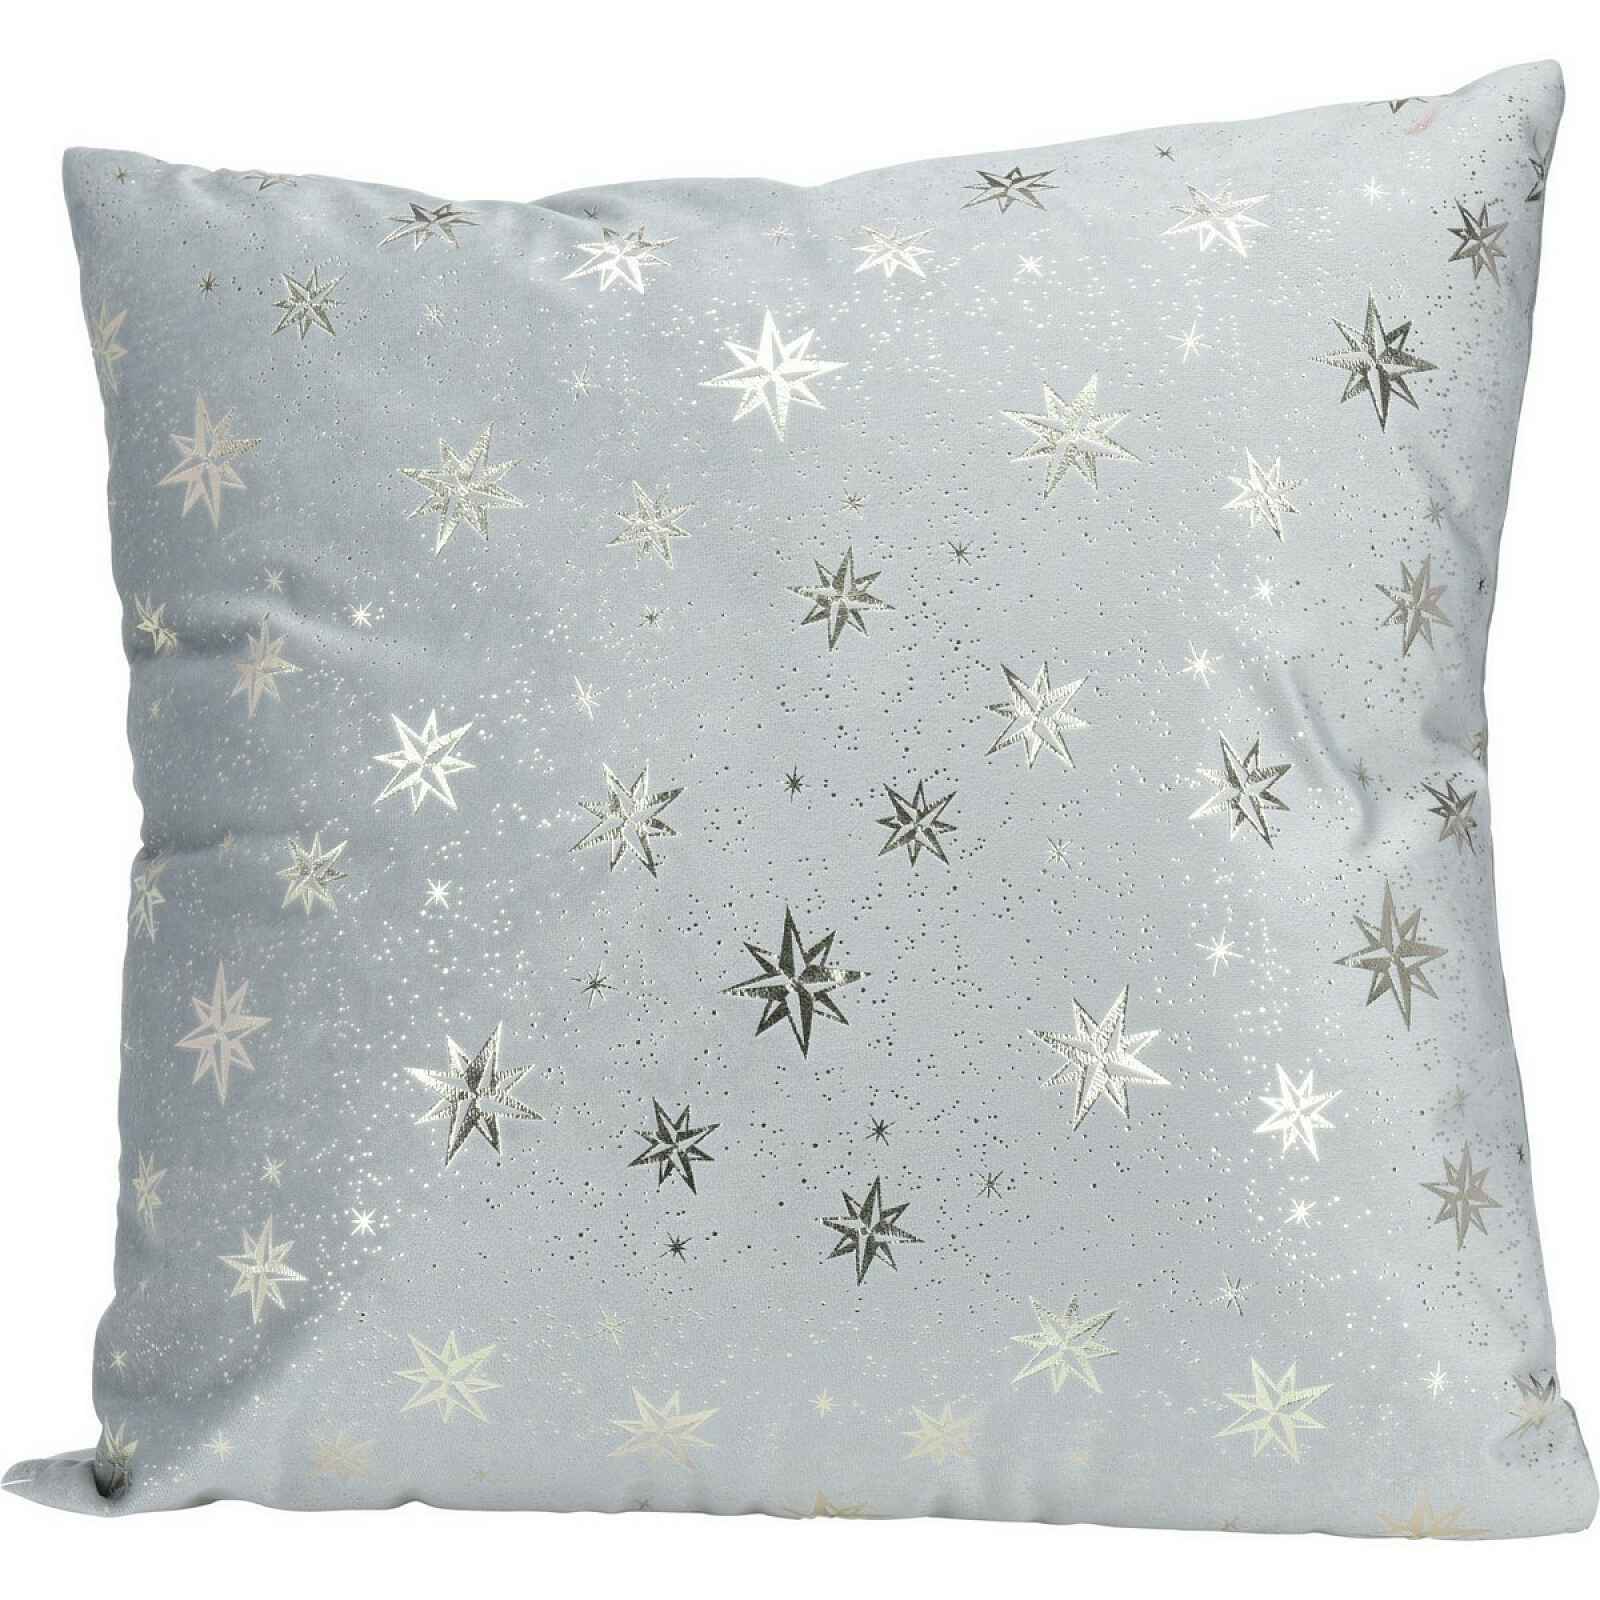 Vánoční dekorační polštářek Stars, stříbrná, 45 x 45 cm